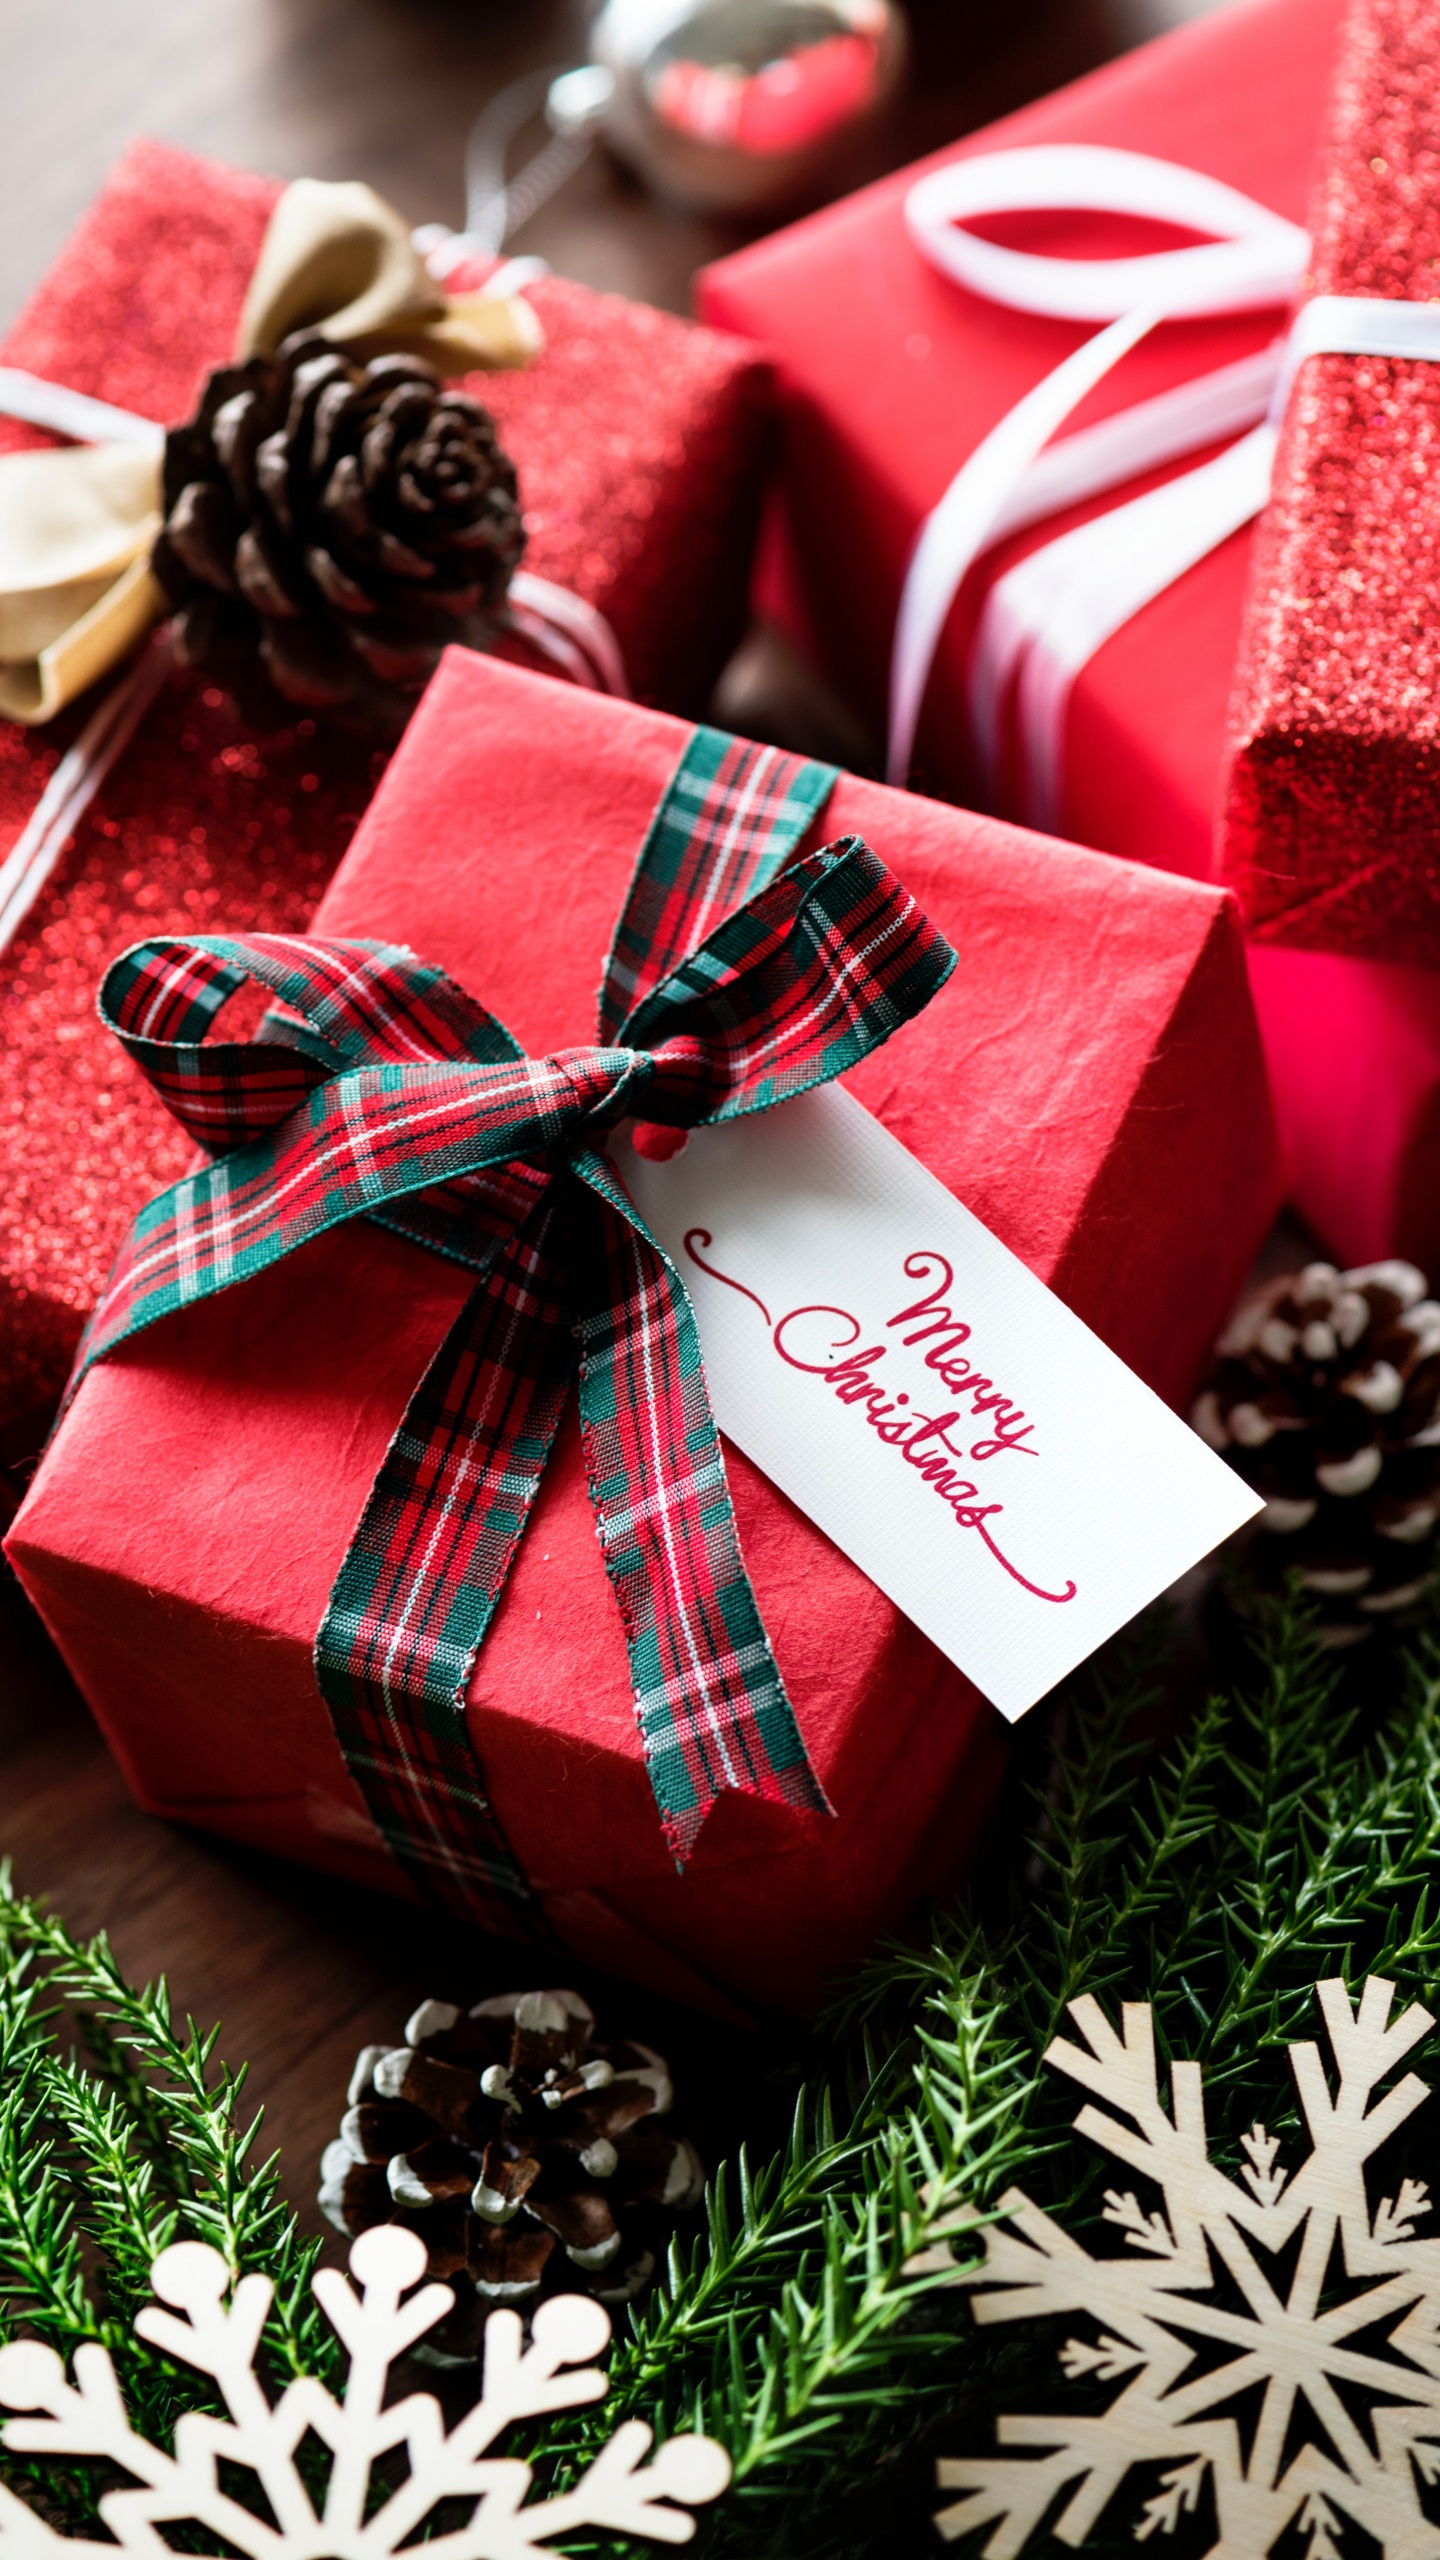 礼物, 圣诞节礼物, 礼品包装, 圣诞节那天, 丝带 壁纸 1440x2560 允许